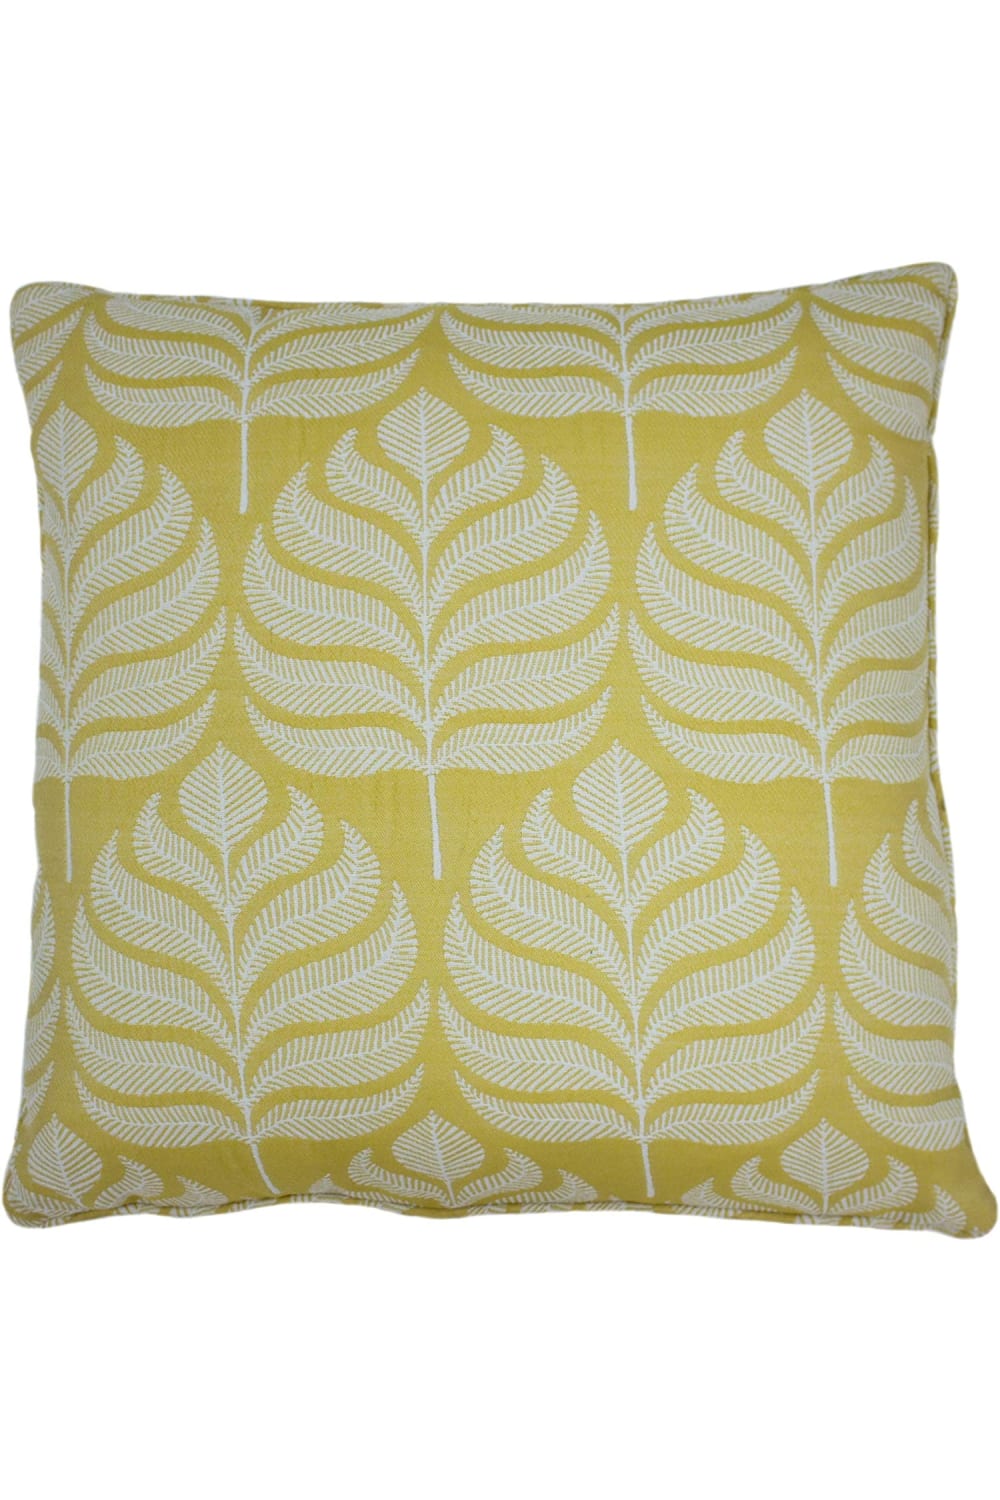 Horto Leaf Cushion Cover - Ochre Yellow